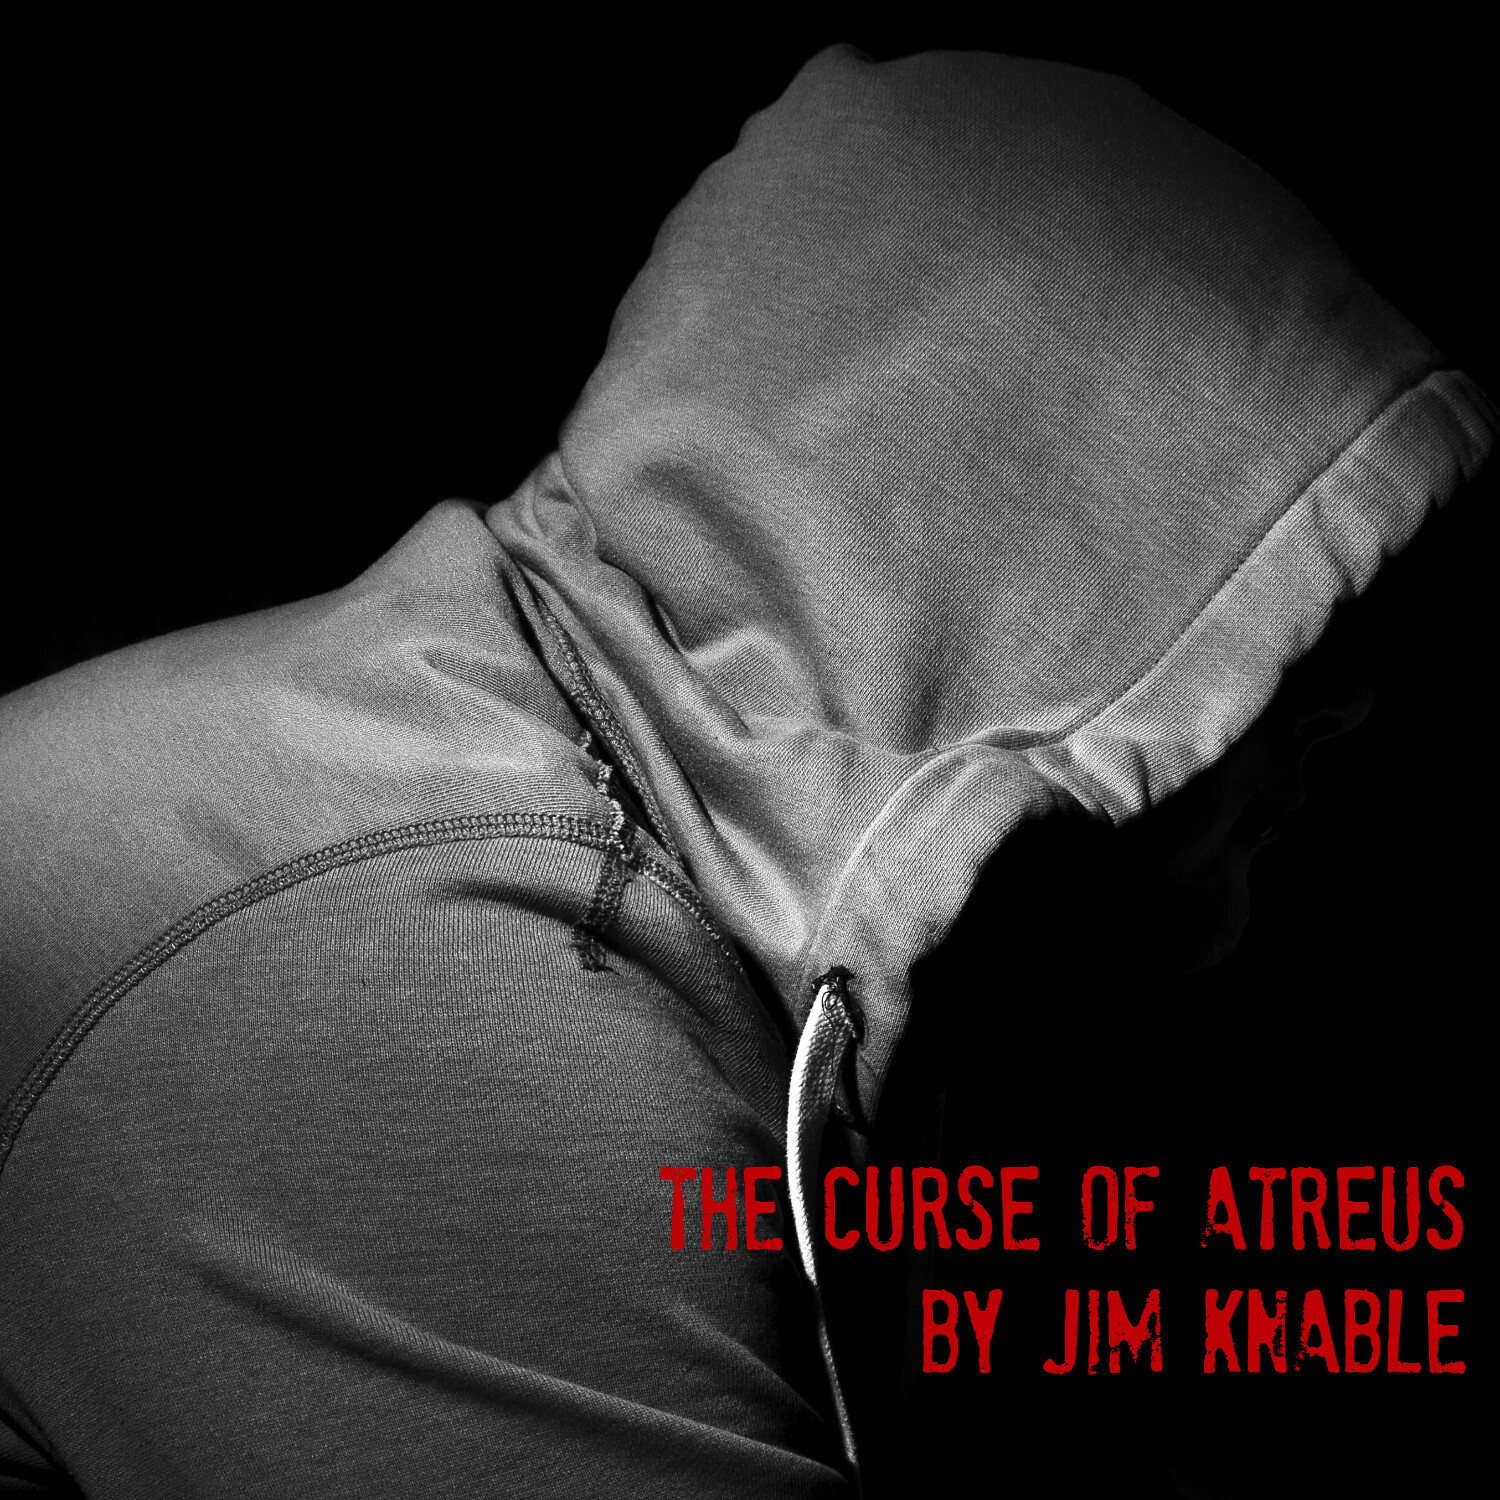 Episode 15 - The Curse of Atreus by Jim Knable Part 1